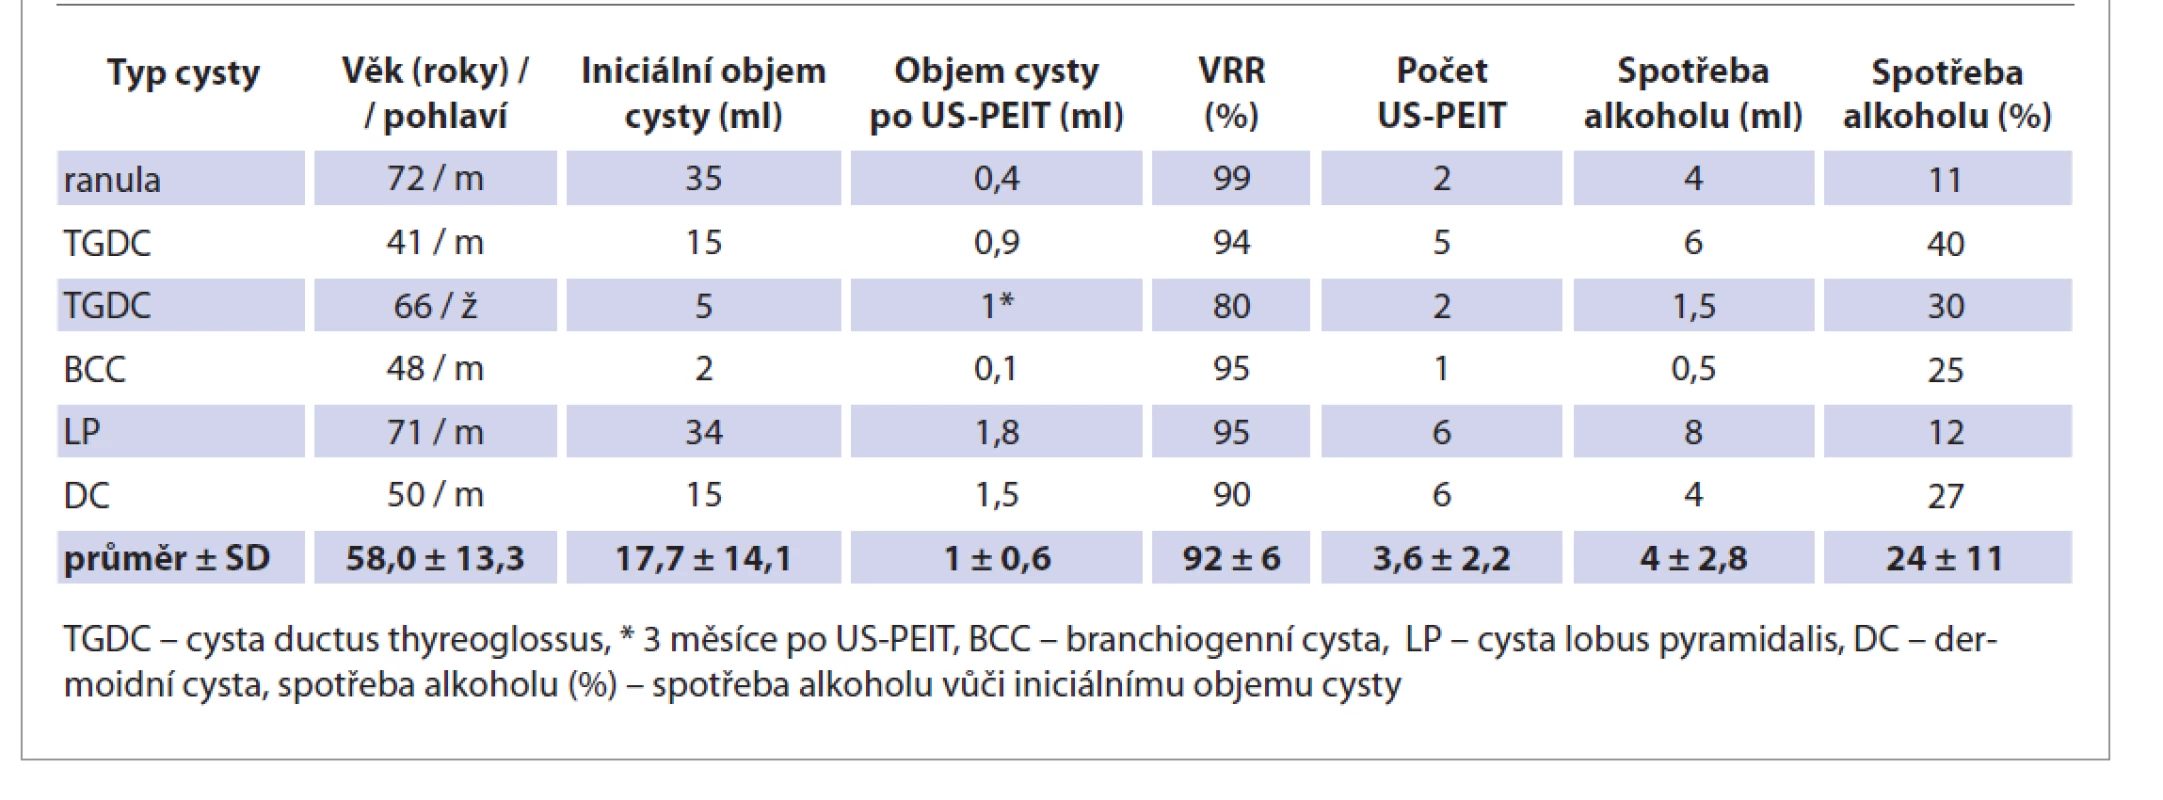 Vstupní údaje a výsledky sklerotizace alkoholem (US-PEIT).<br>
Tab. 1. Input data and results of alcohol sclerosing (US-PEIT).